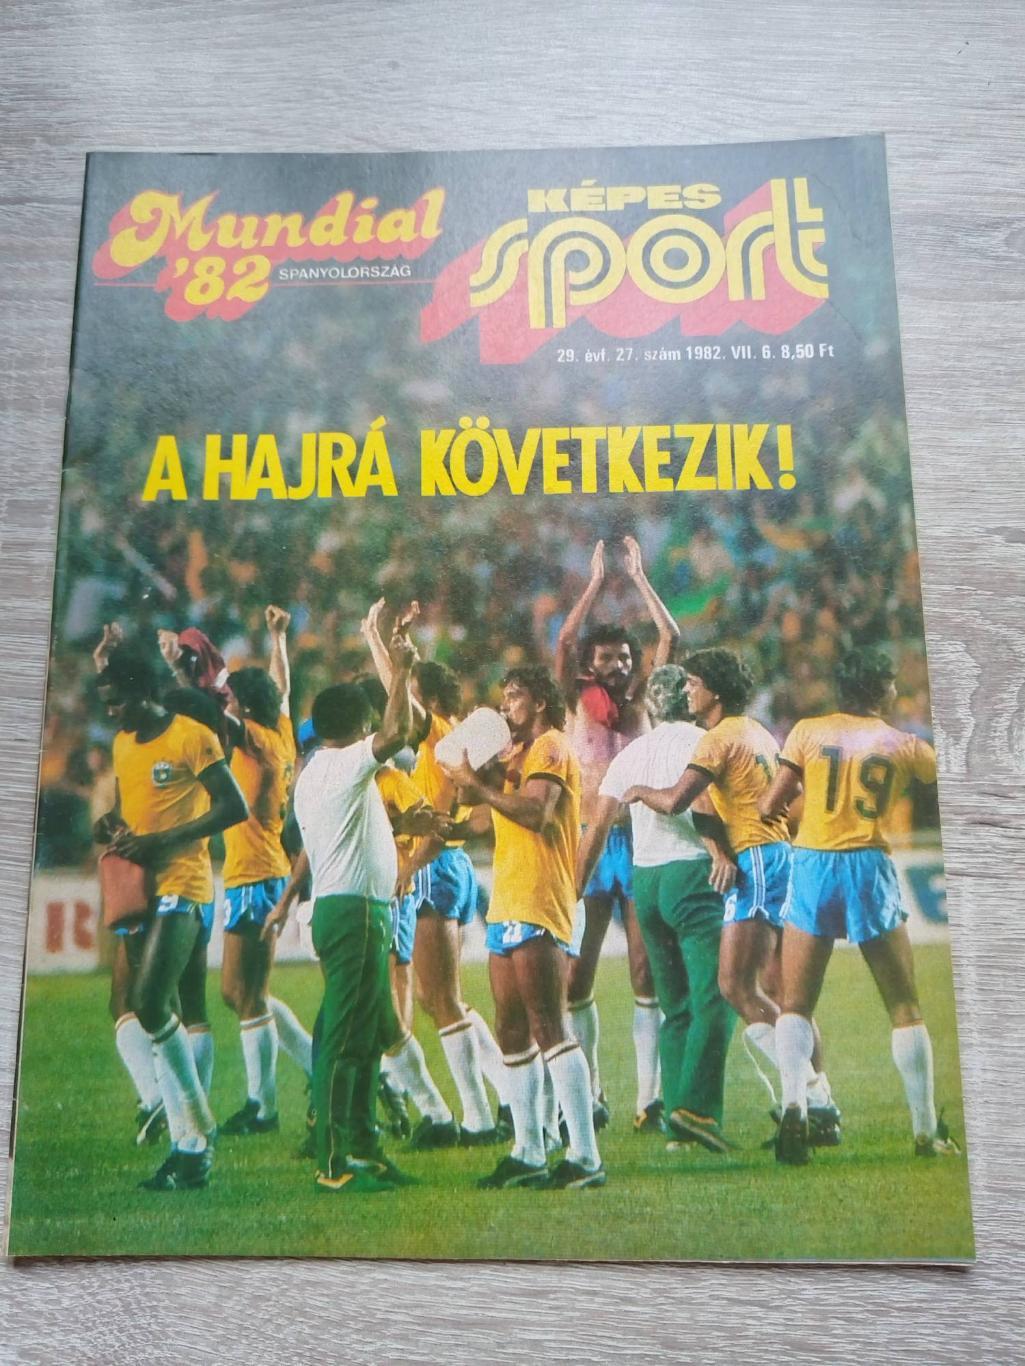 Футбол. Журнал. Kepes sport (Кепеш спорт). Чемпионат мира 1982. Постер - Бонек